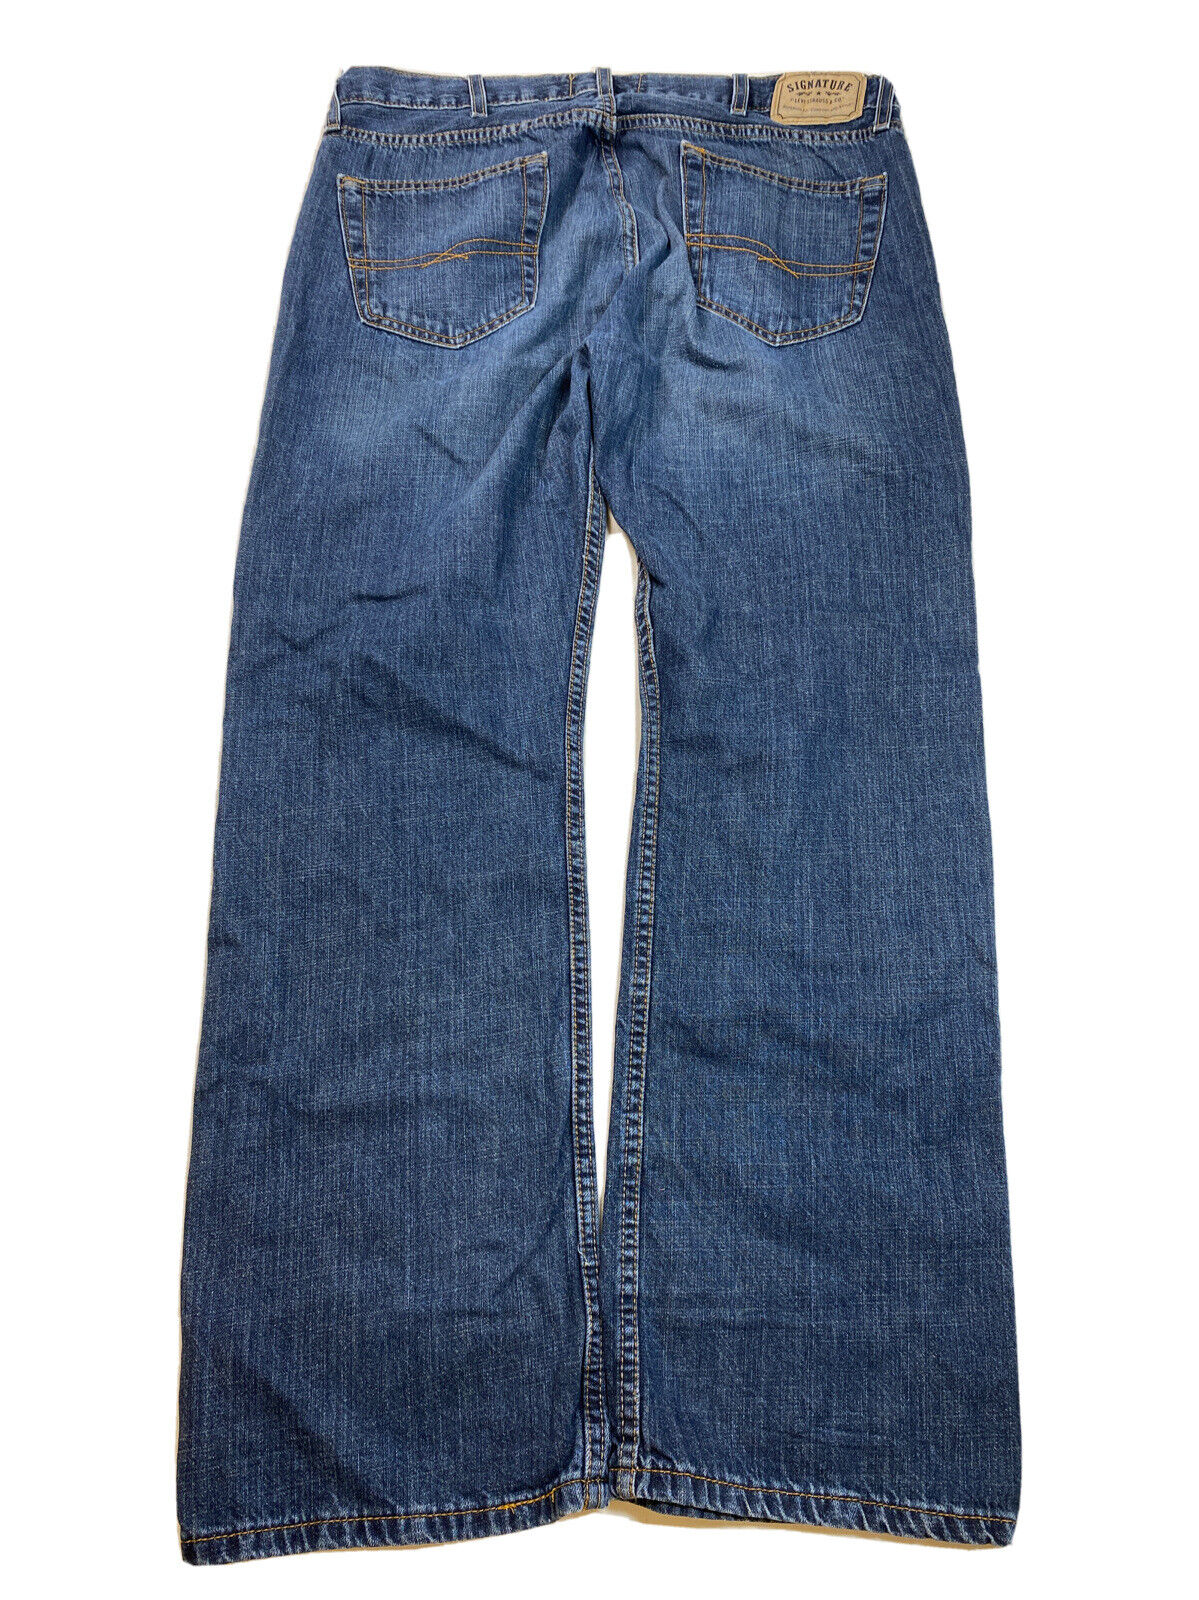 Levis Signature Men's Medium Wash Slim Straight Denim Jeans - 38x32